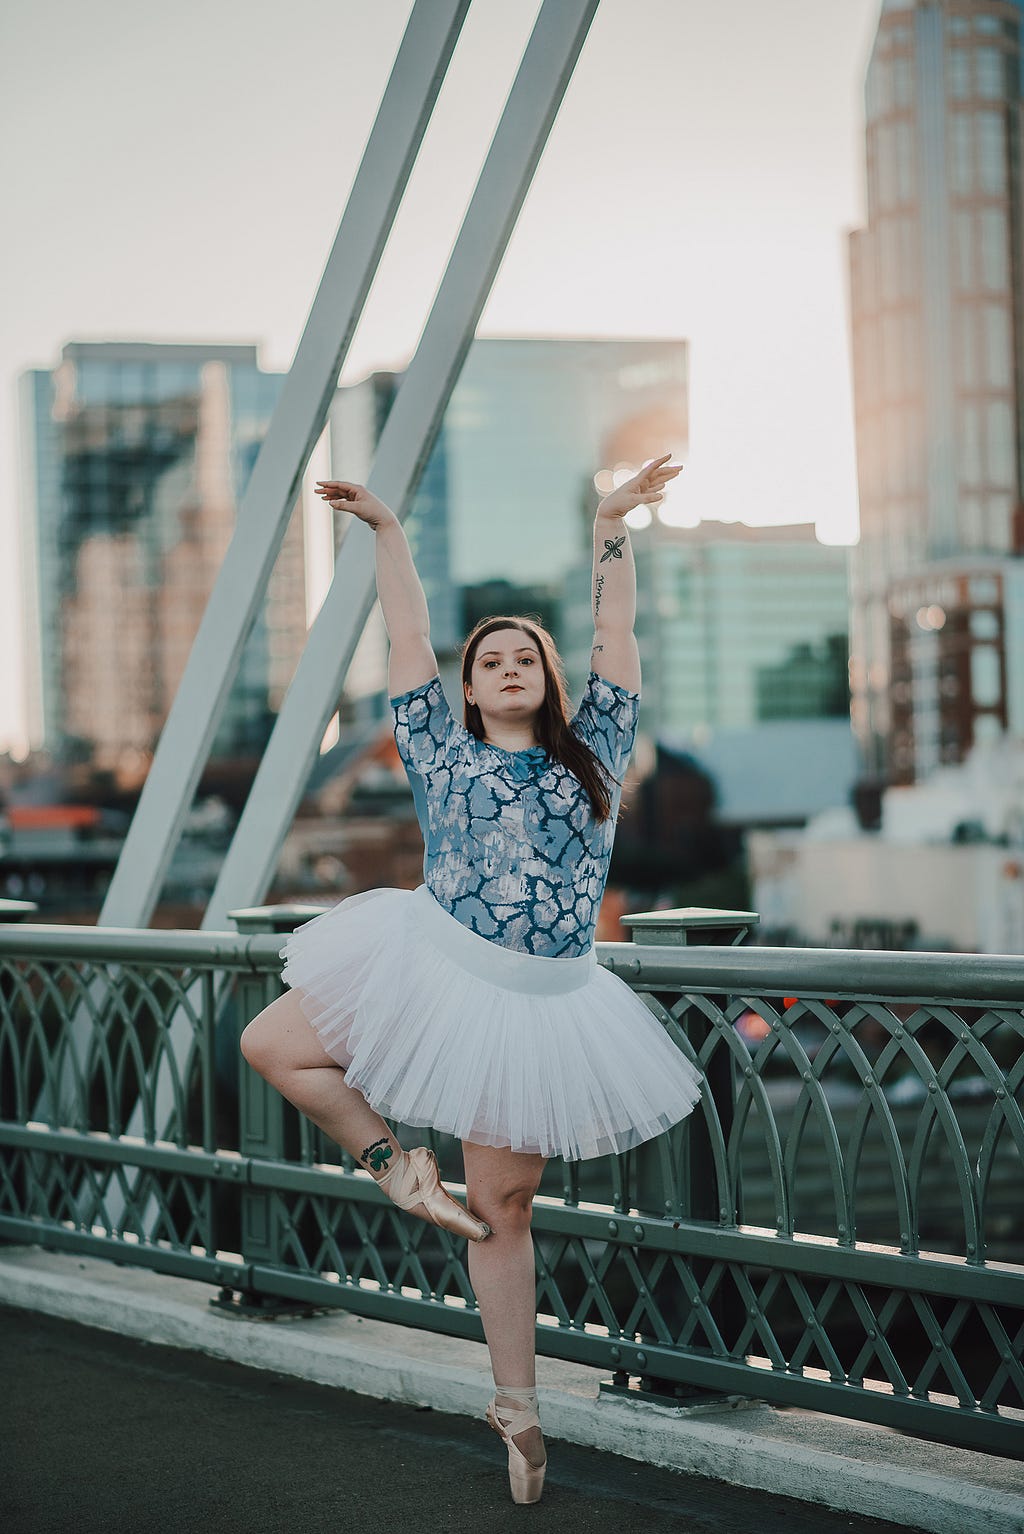 Ballerina posing outside on a bridge